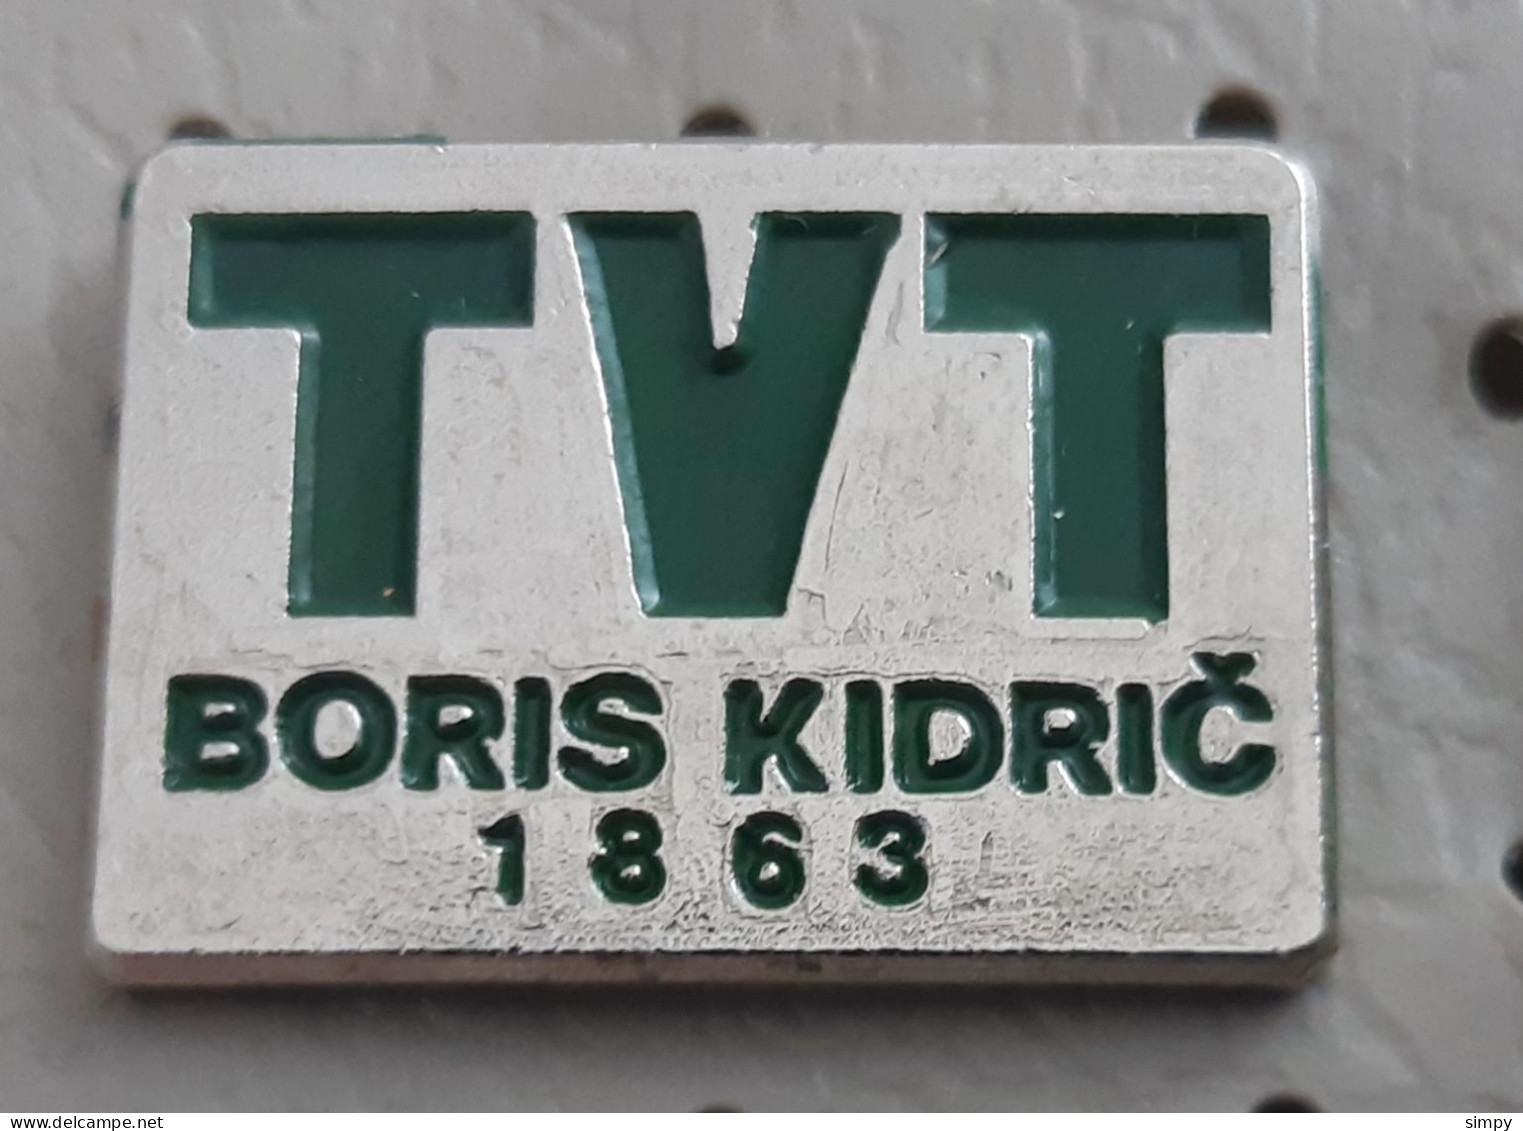 TVT Boris Kidric Maribor 1863 Locomotive Train Industry Slovenia Ex Yugoslavia Pin - Trasporti